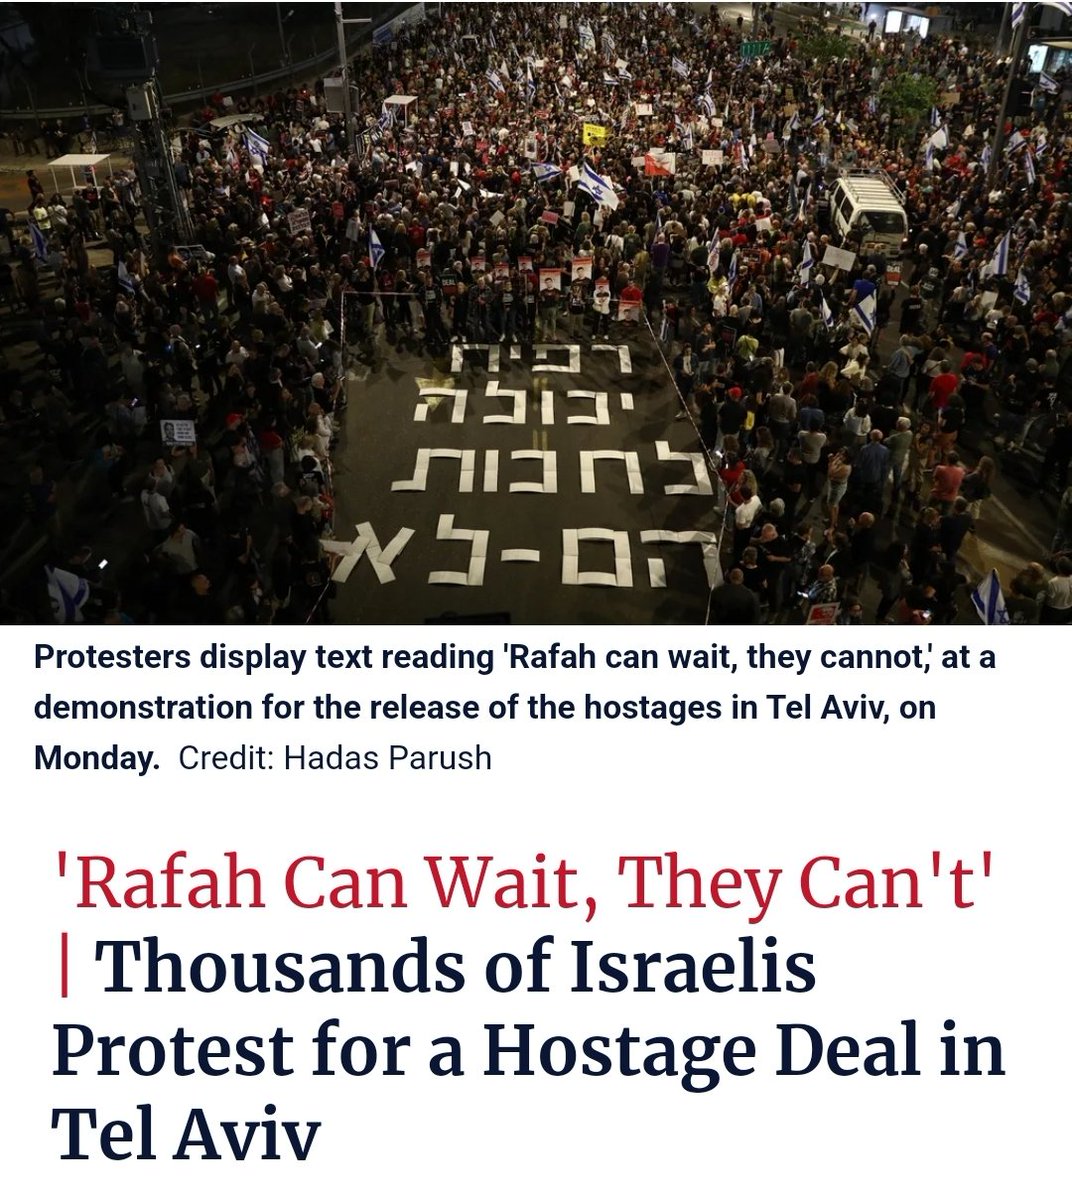 Les manifestants contre Netanyahou : 

'Rafah peut attendre, Eux (les otages) non'.

Au cas où certains se bercent encore d'illusions sur une opposition libérale et pacifique.